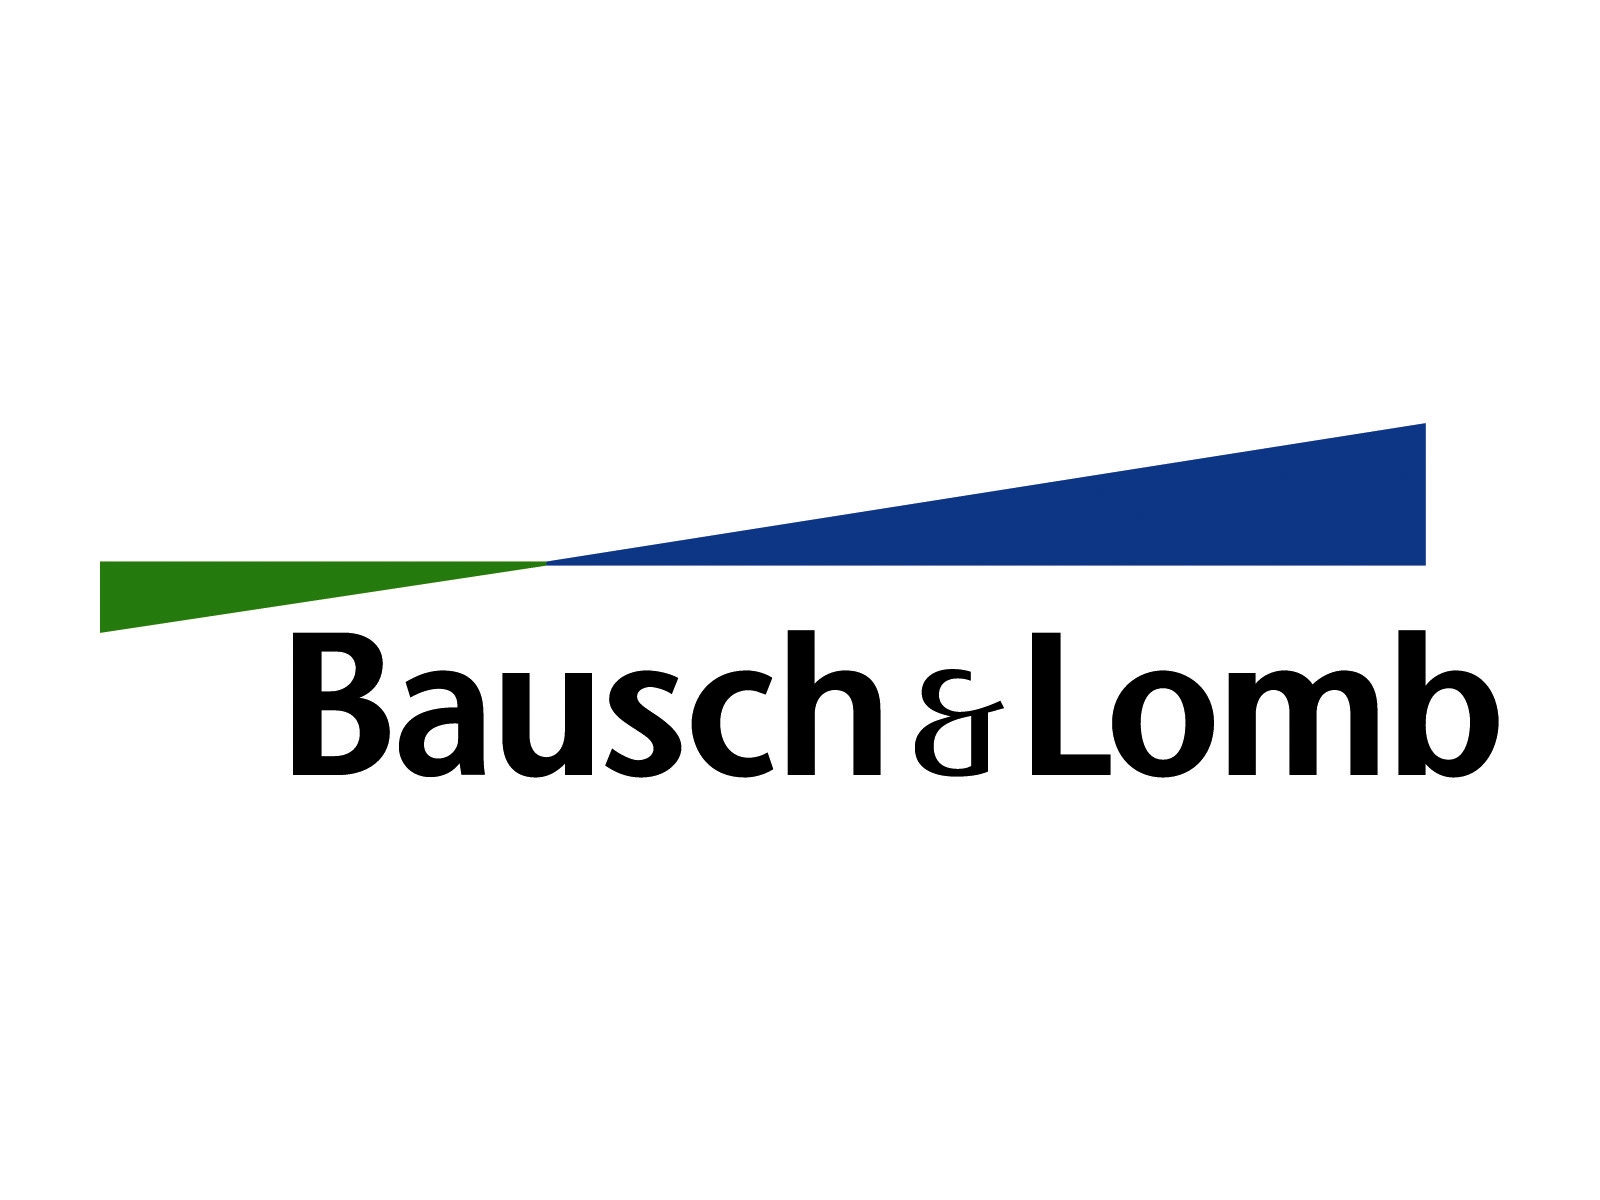 Bausch & Lomb Inc